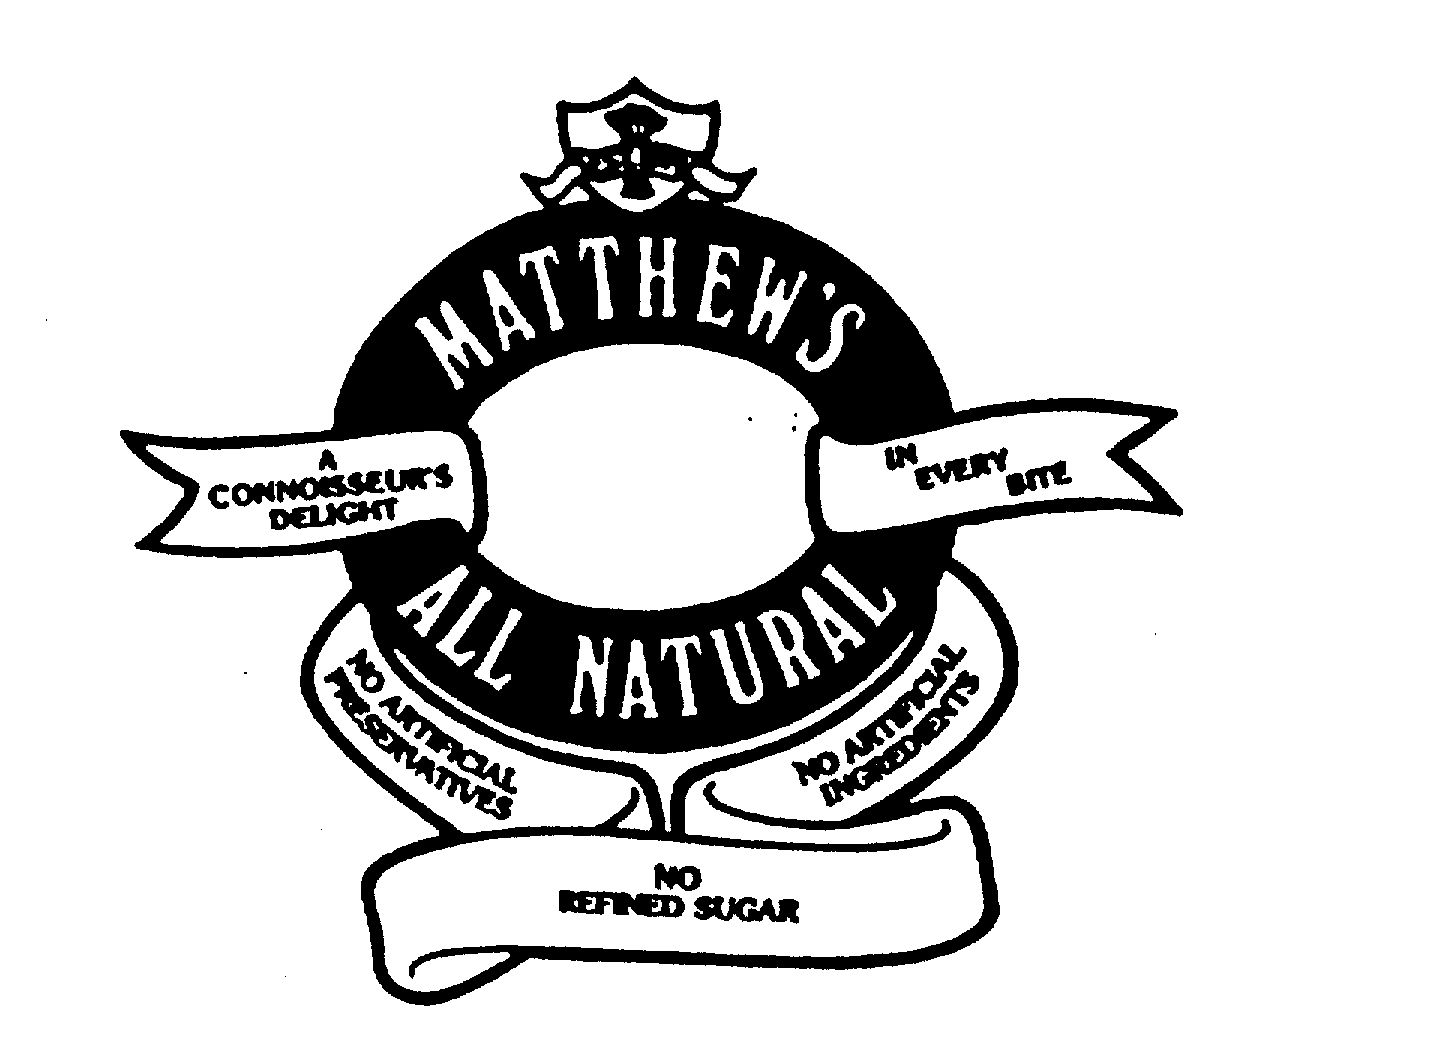  MATTHEW'S ALL NATURAL